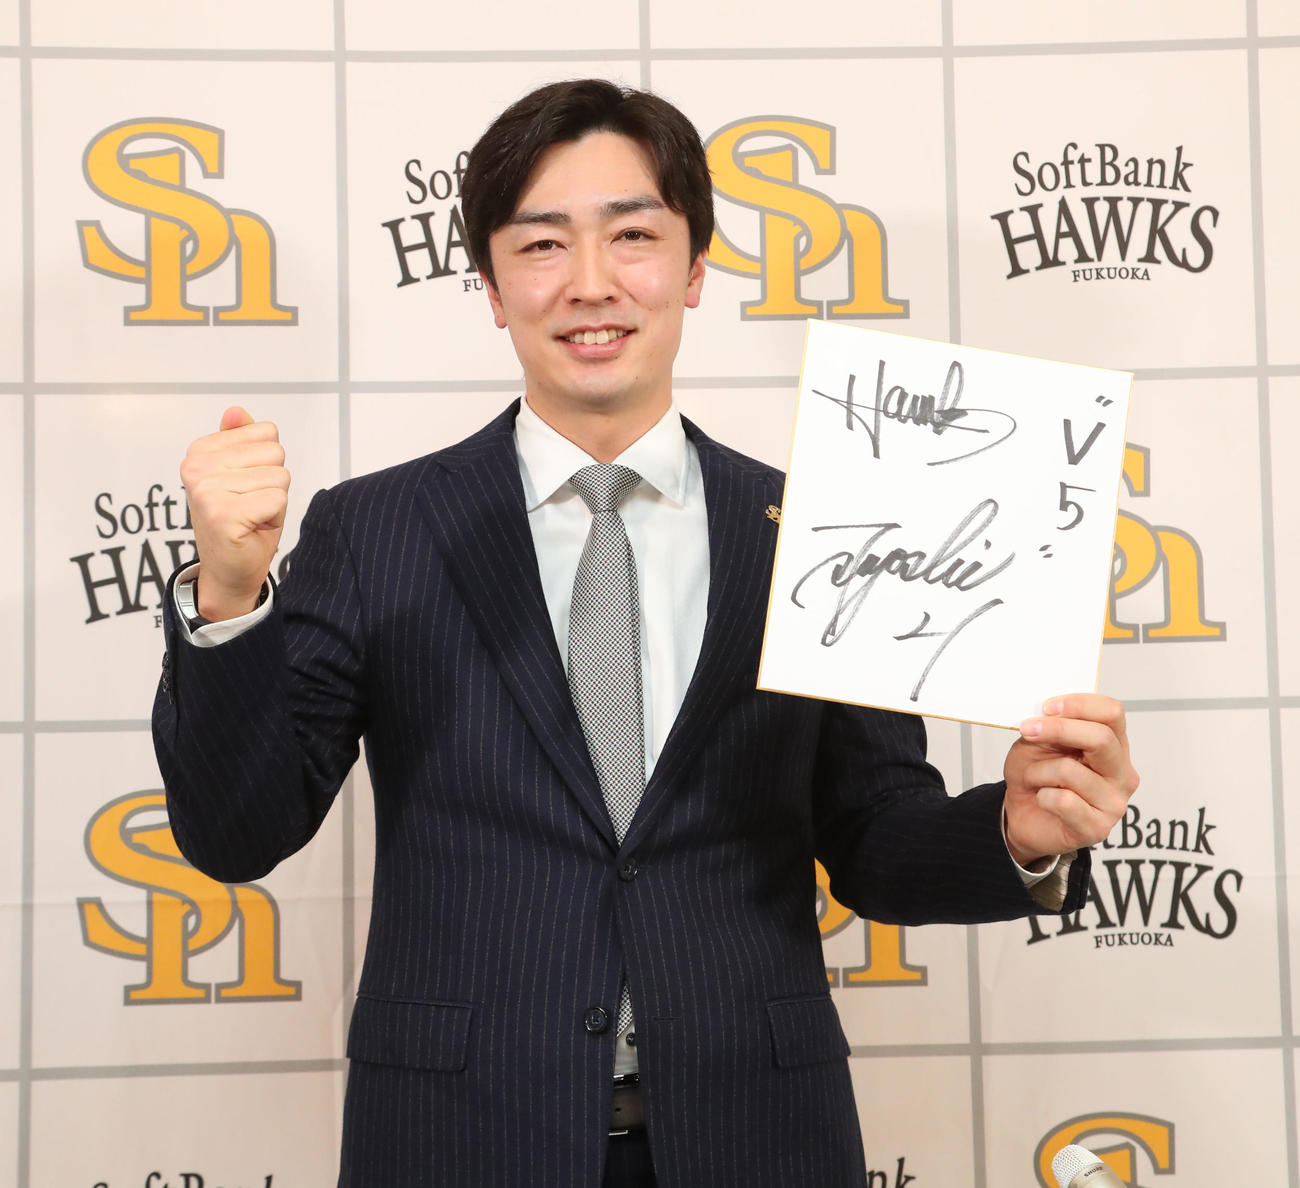 契約更改を終えた和田毅は「V5」と色紙に記し笑顔を見せる（撮影・梅根麻紀）